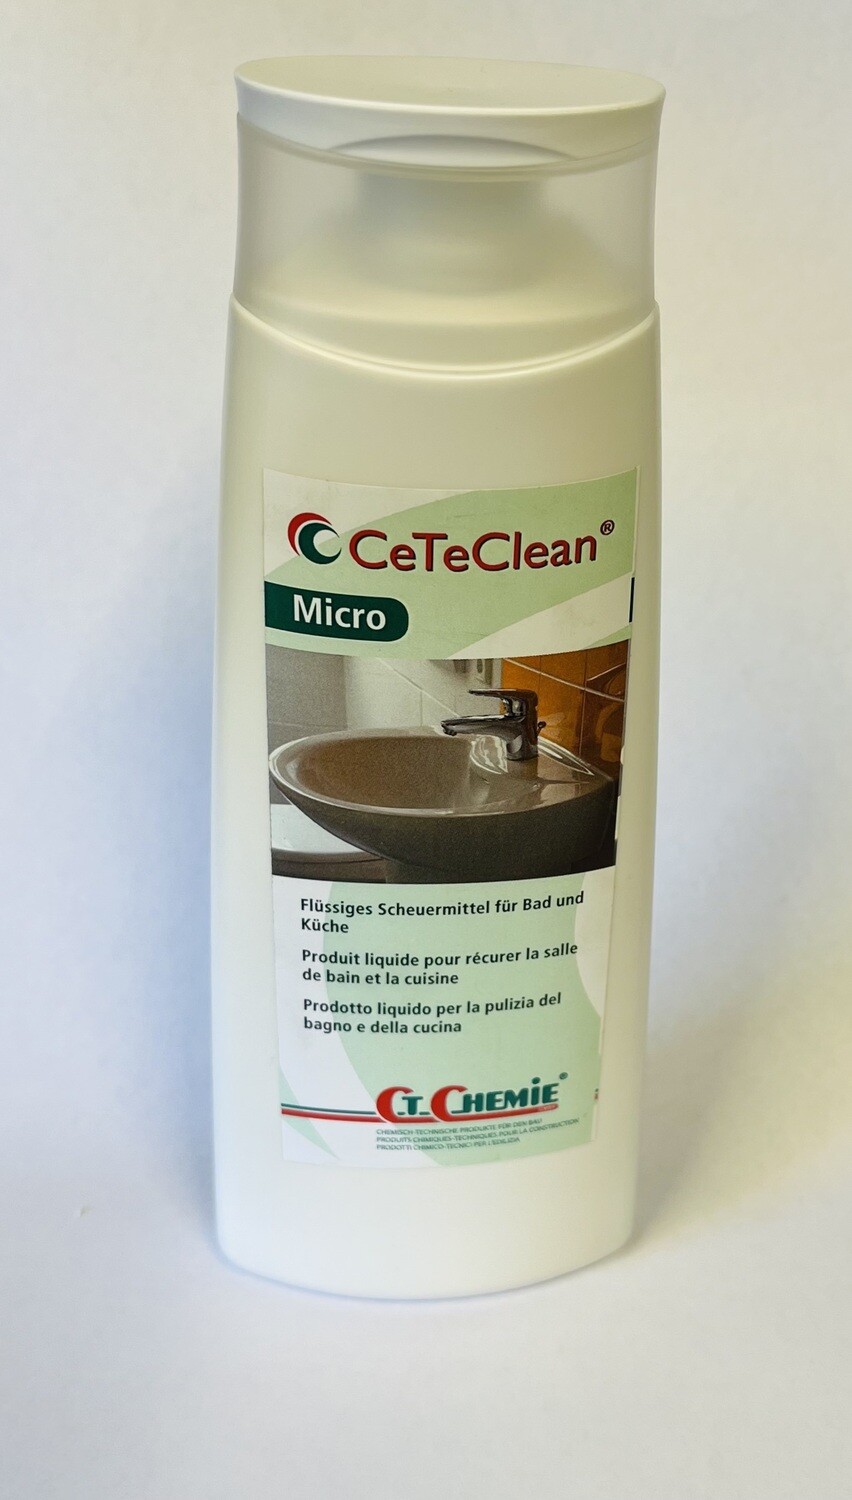 CeTeClean flüssiges Scheuermittel für Bad und Küche Gebinde 250 ml